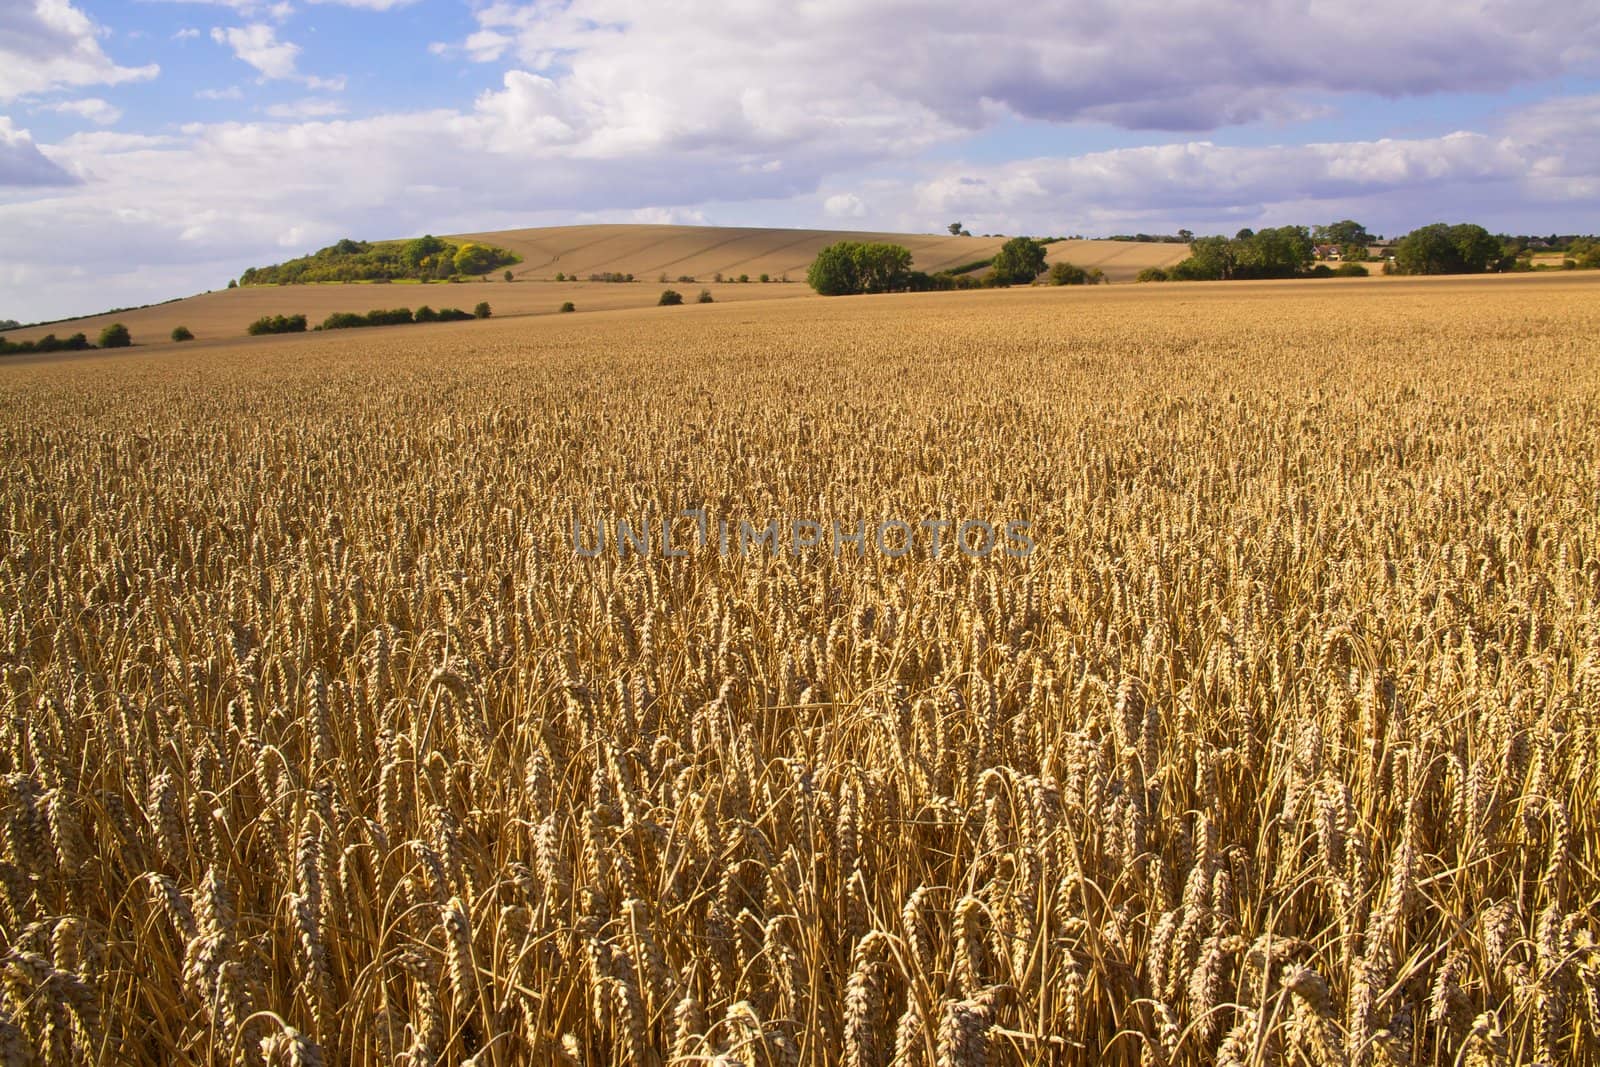 Wheat fields by Harvepino